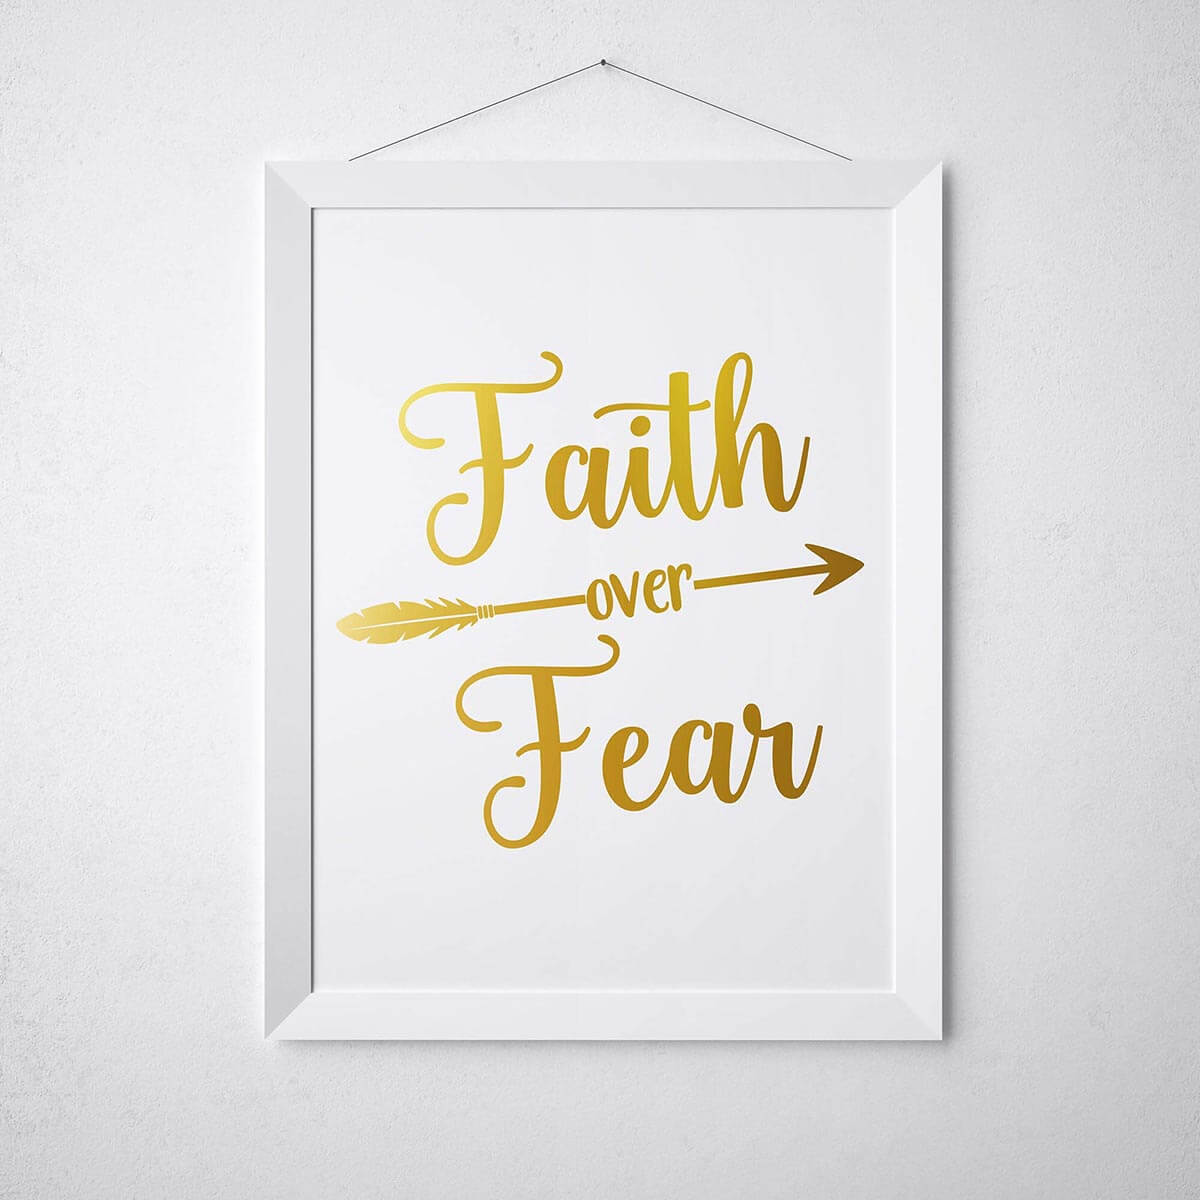 Christian Wall Art, Faith Over Fear, Gold Foiled